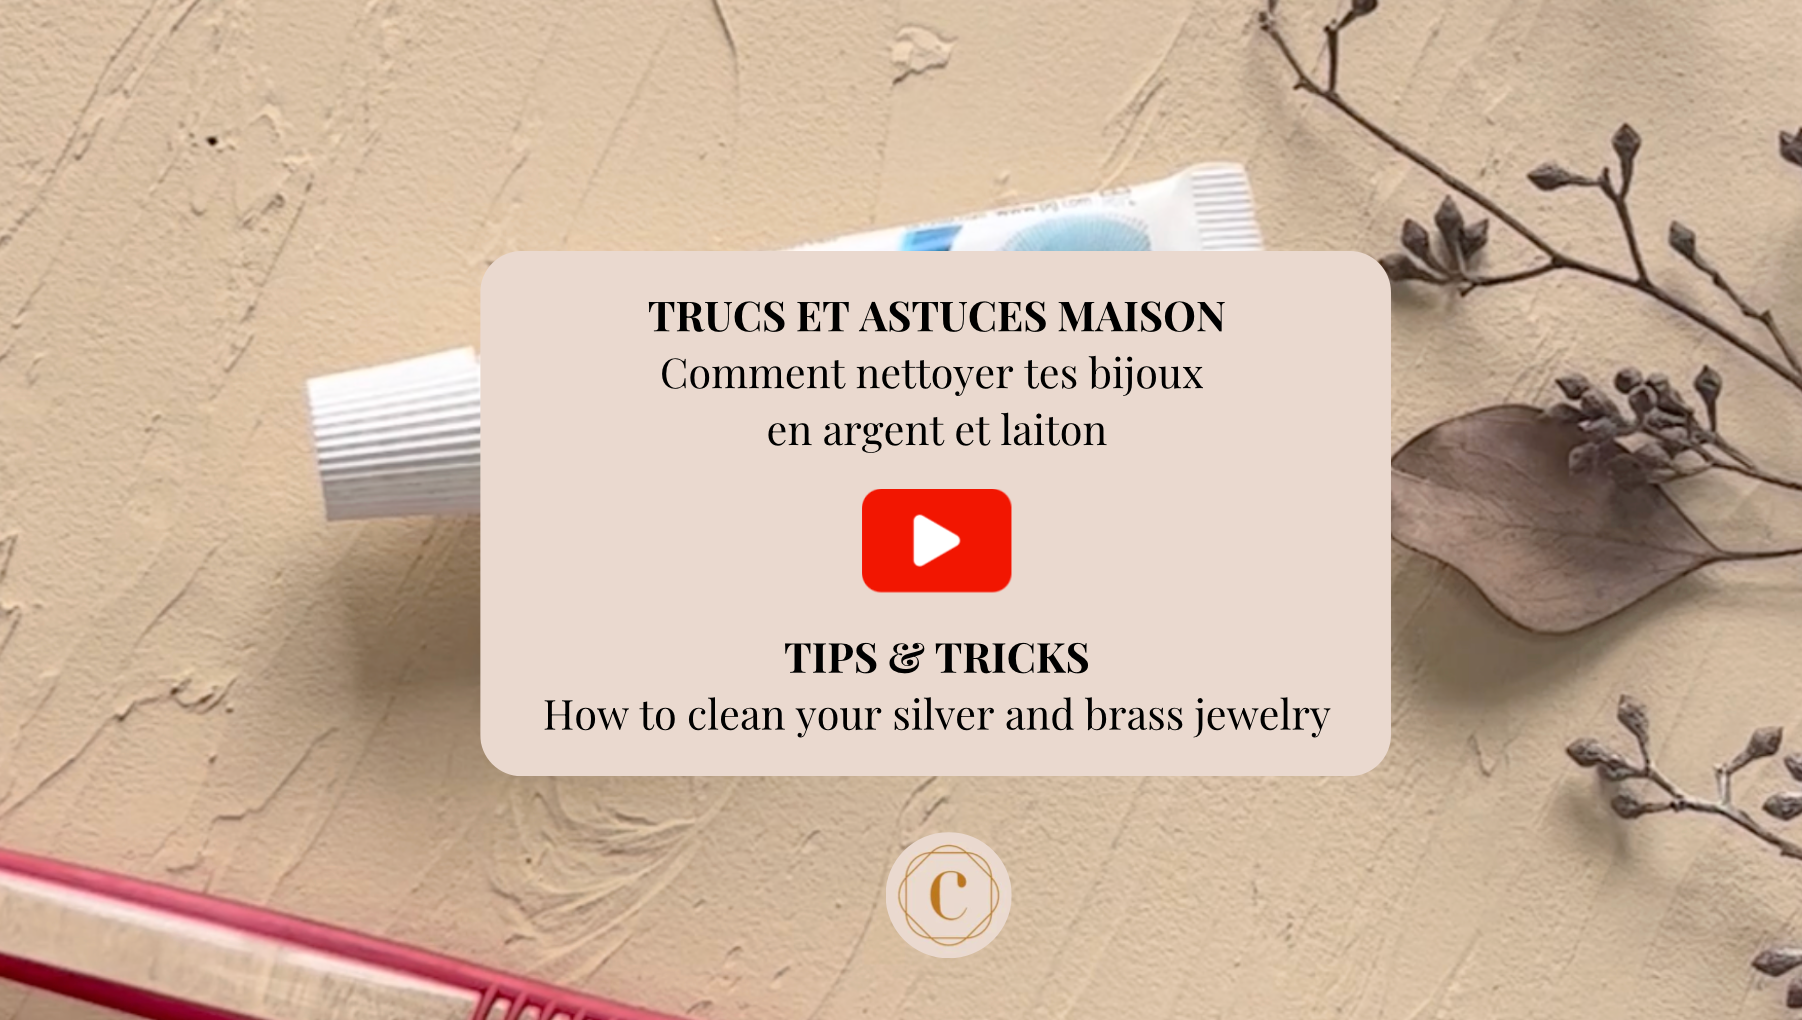 Astuces : Comment nettoyer ses bijoux ?